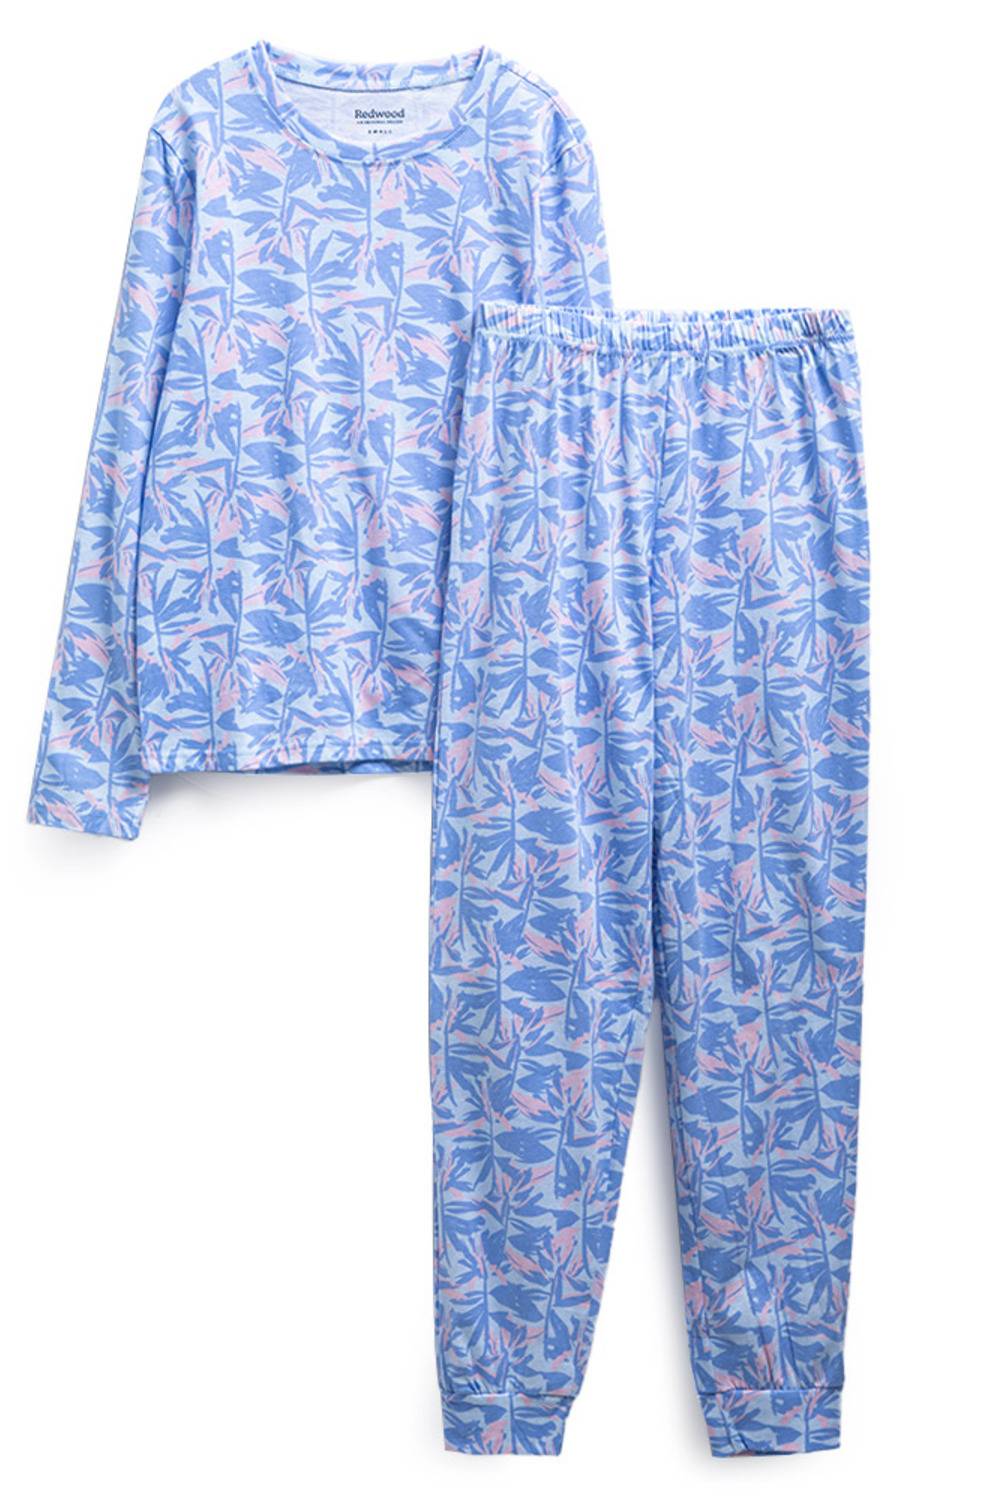 REDWOOD - Pijama Larga Mujer Full Print